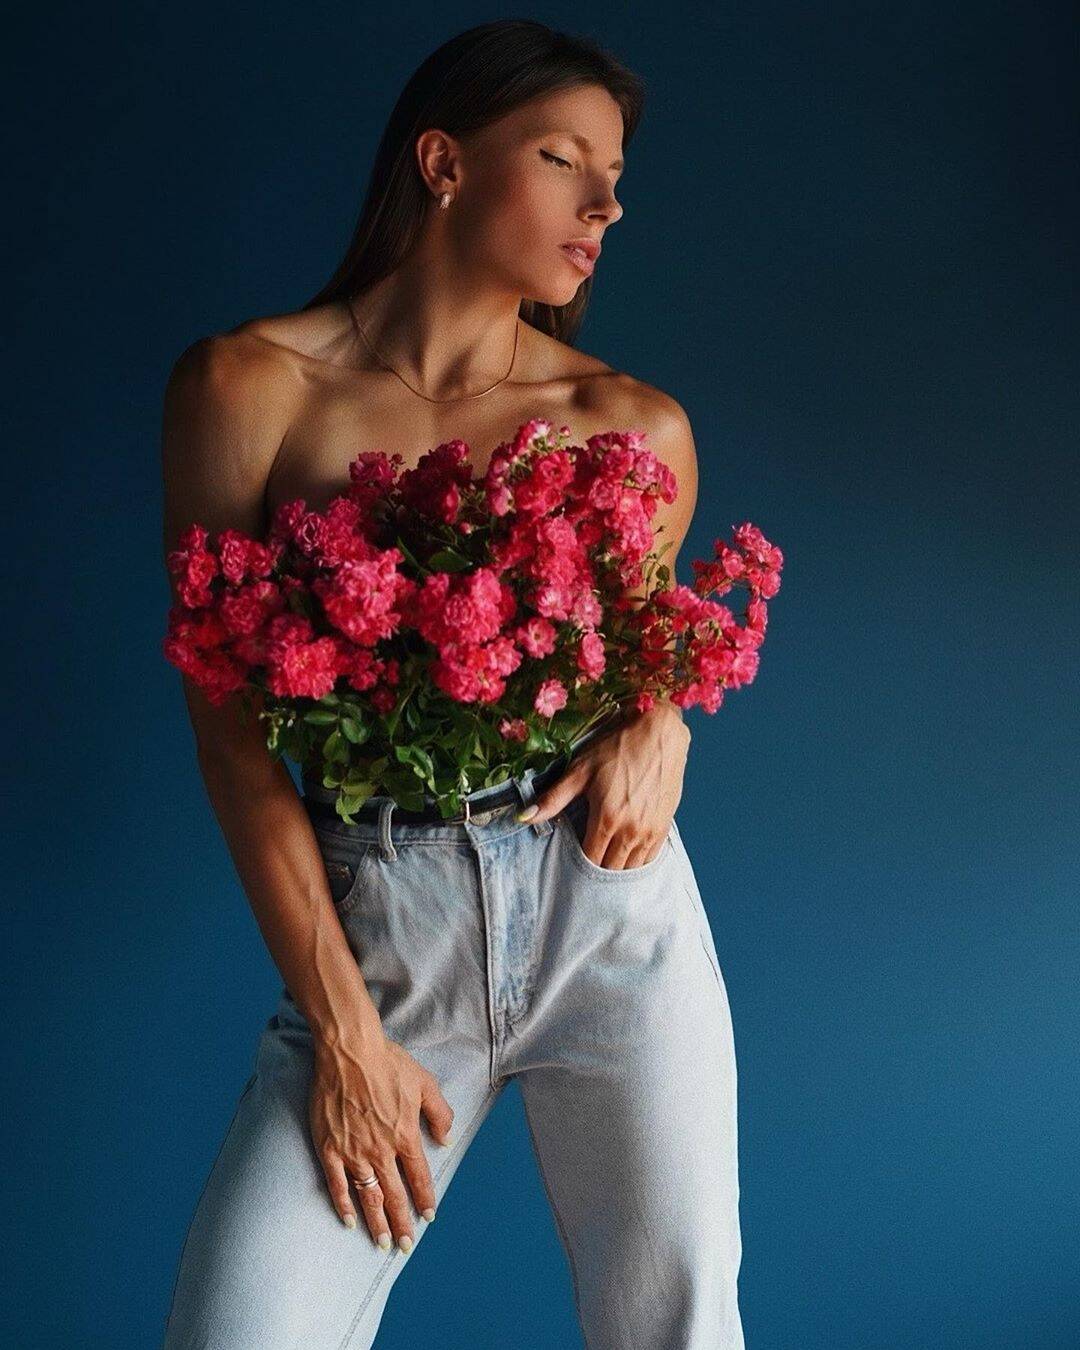 Марина Бех-Романчук разом з трояндами у відвертій фотосесії